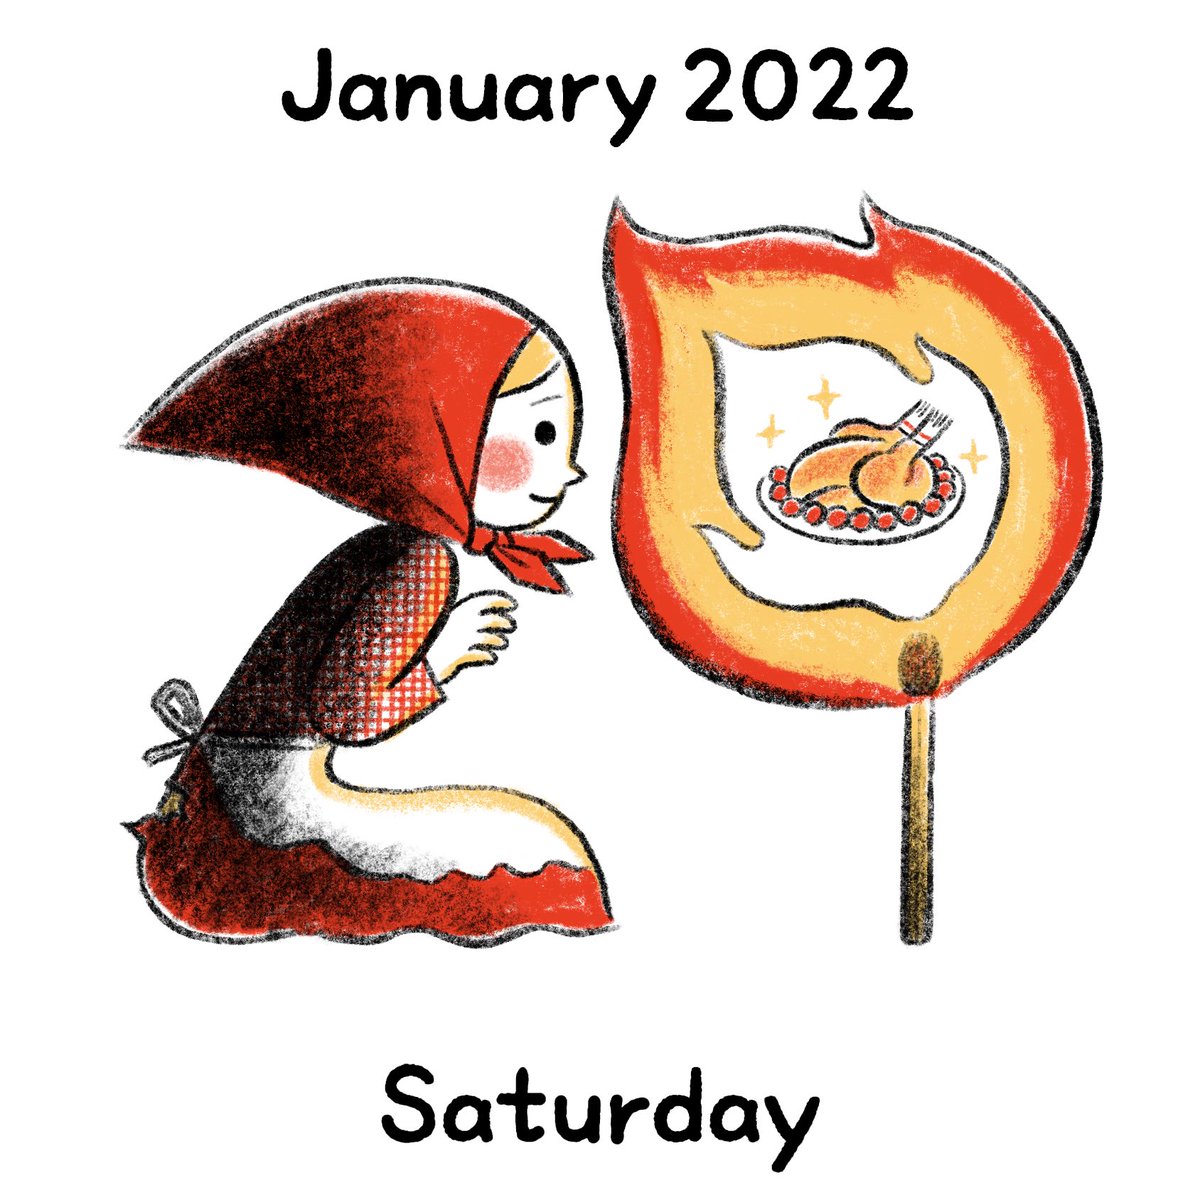 「2022年1月29日
マッチ売りの少女

#イラスト数字の日めくりカレンダー 」|寺山武士 Takeshi Terayamaのイラスト